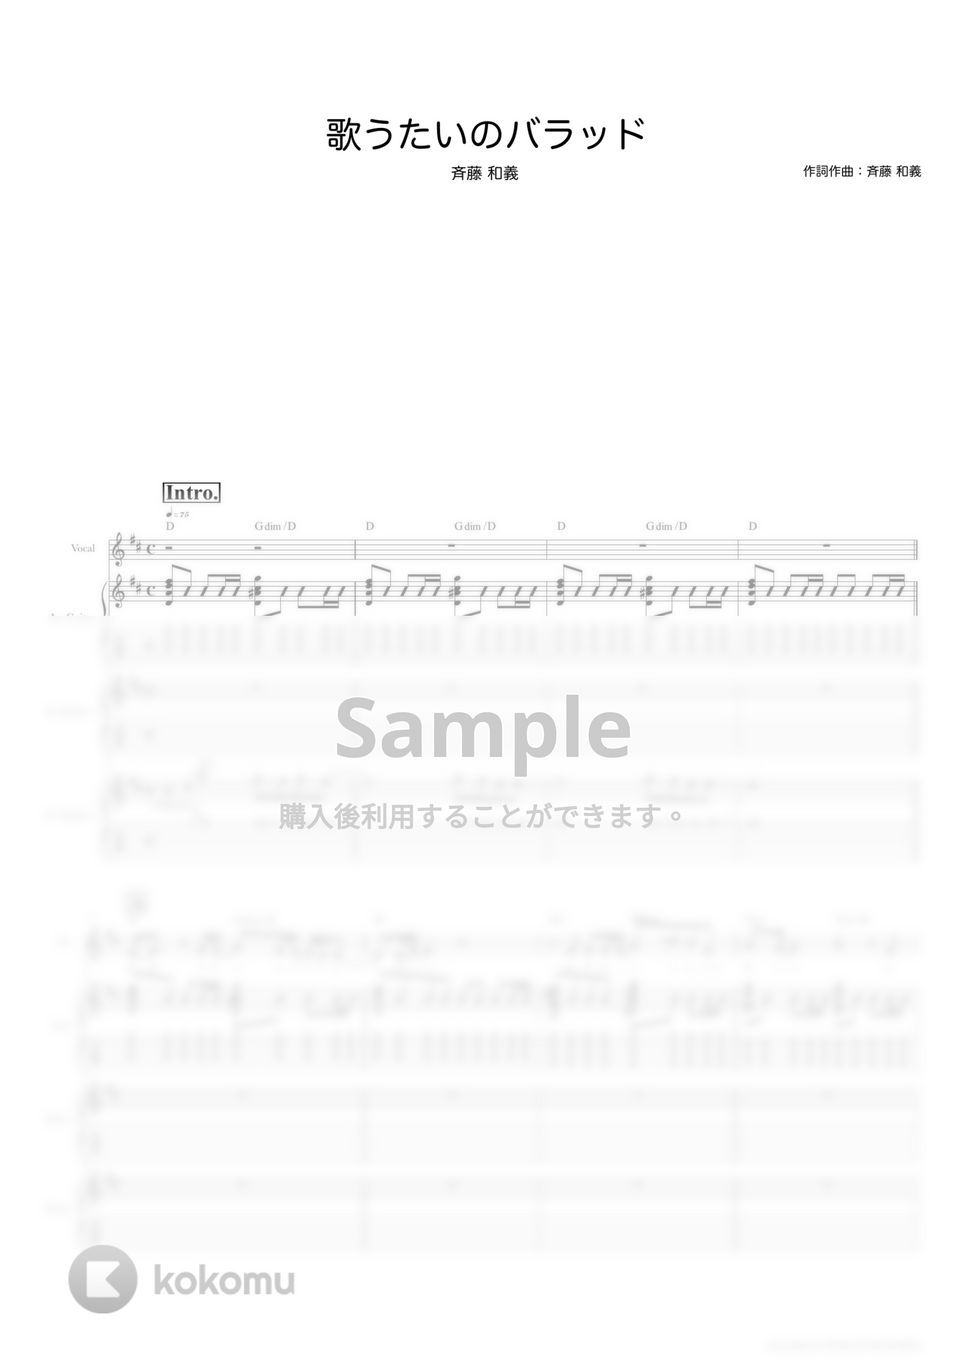 斉藤　和義 - 歌うたいのバラッド (ギタースコア・歌詞・コード付き) by TRIAD GUITAR SCHOOL